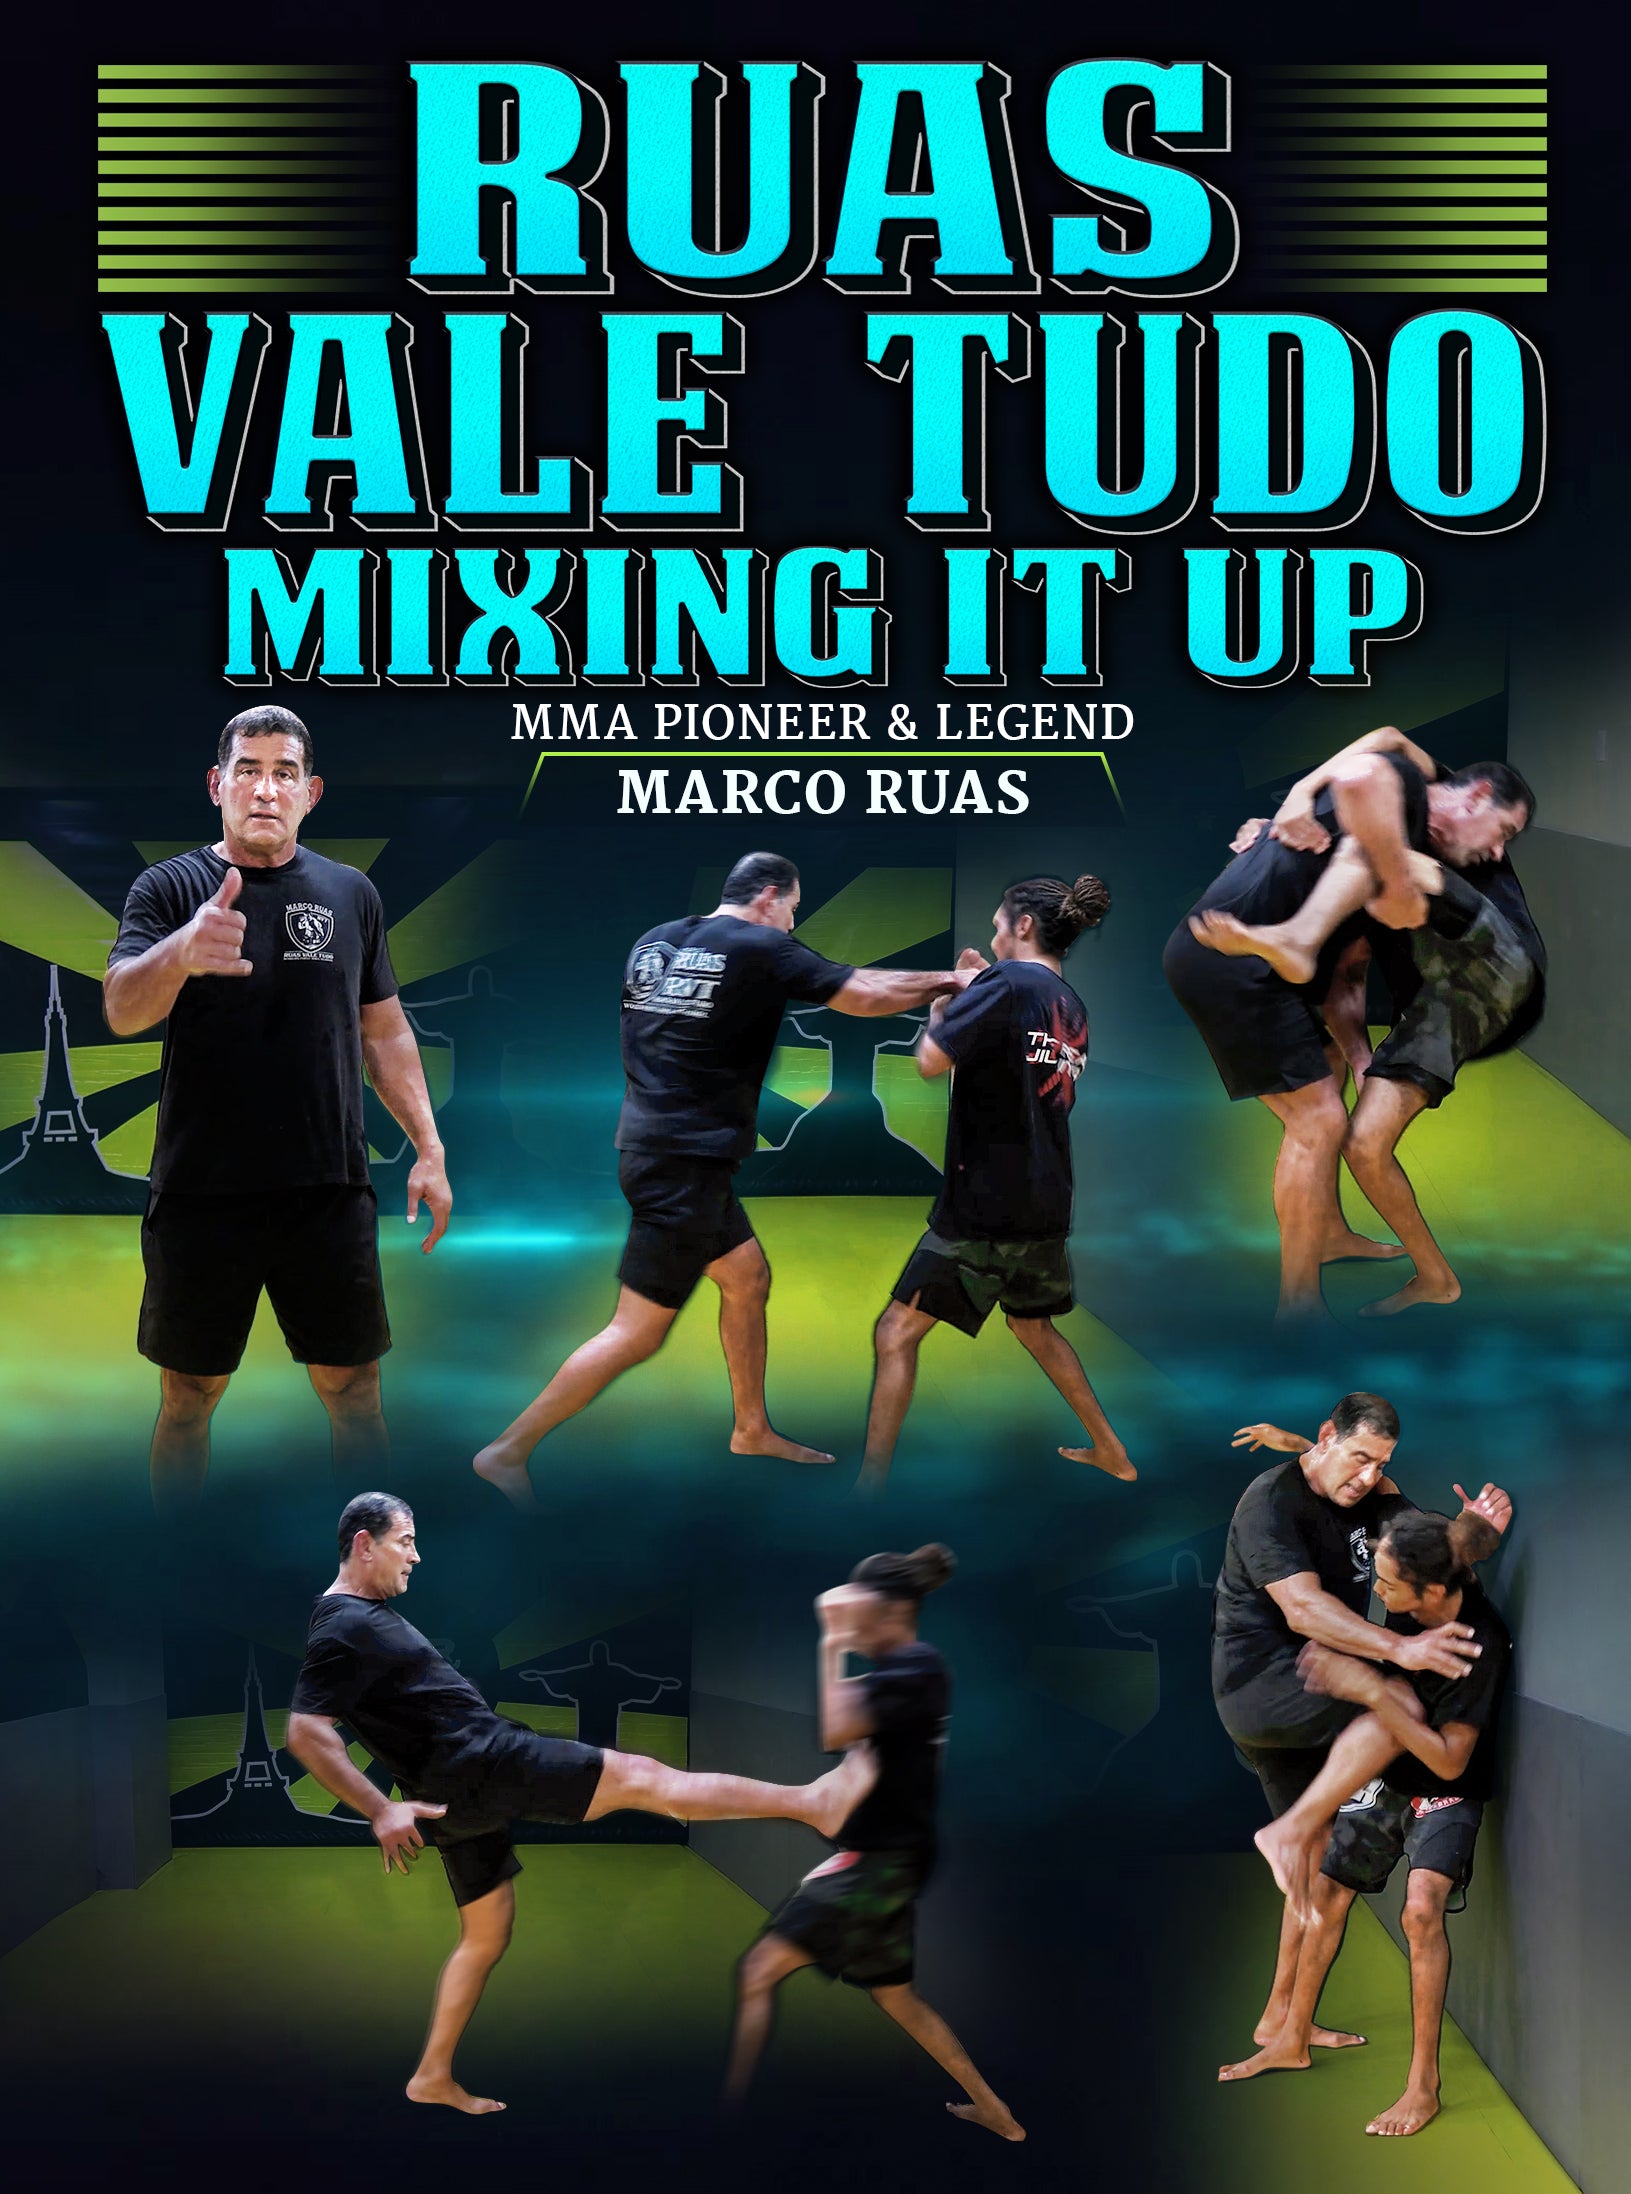 Marco Ruas - Luta Livre and Valencia Tudo fighter.